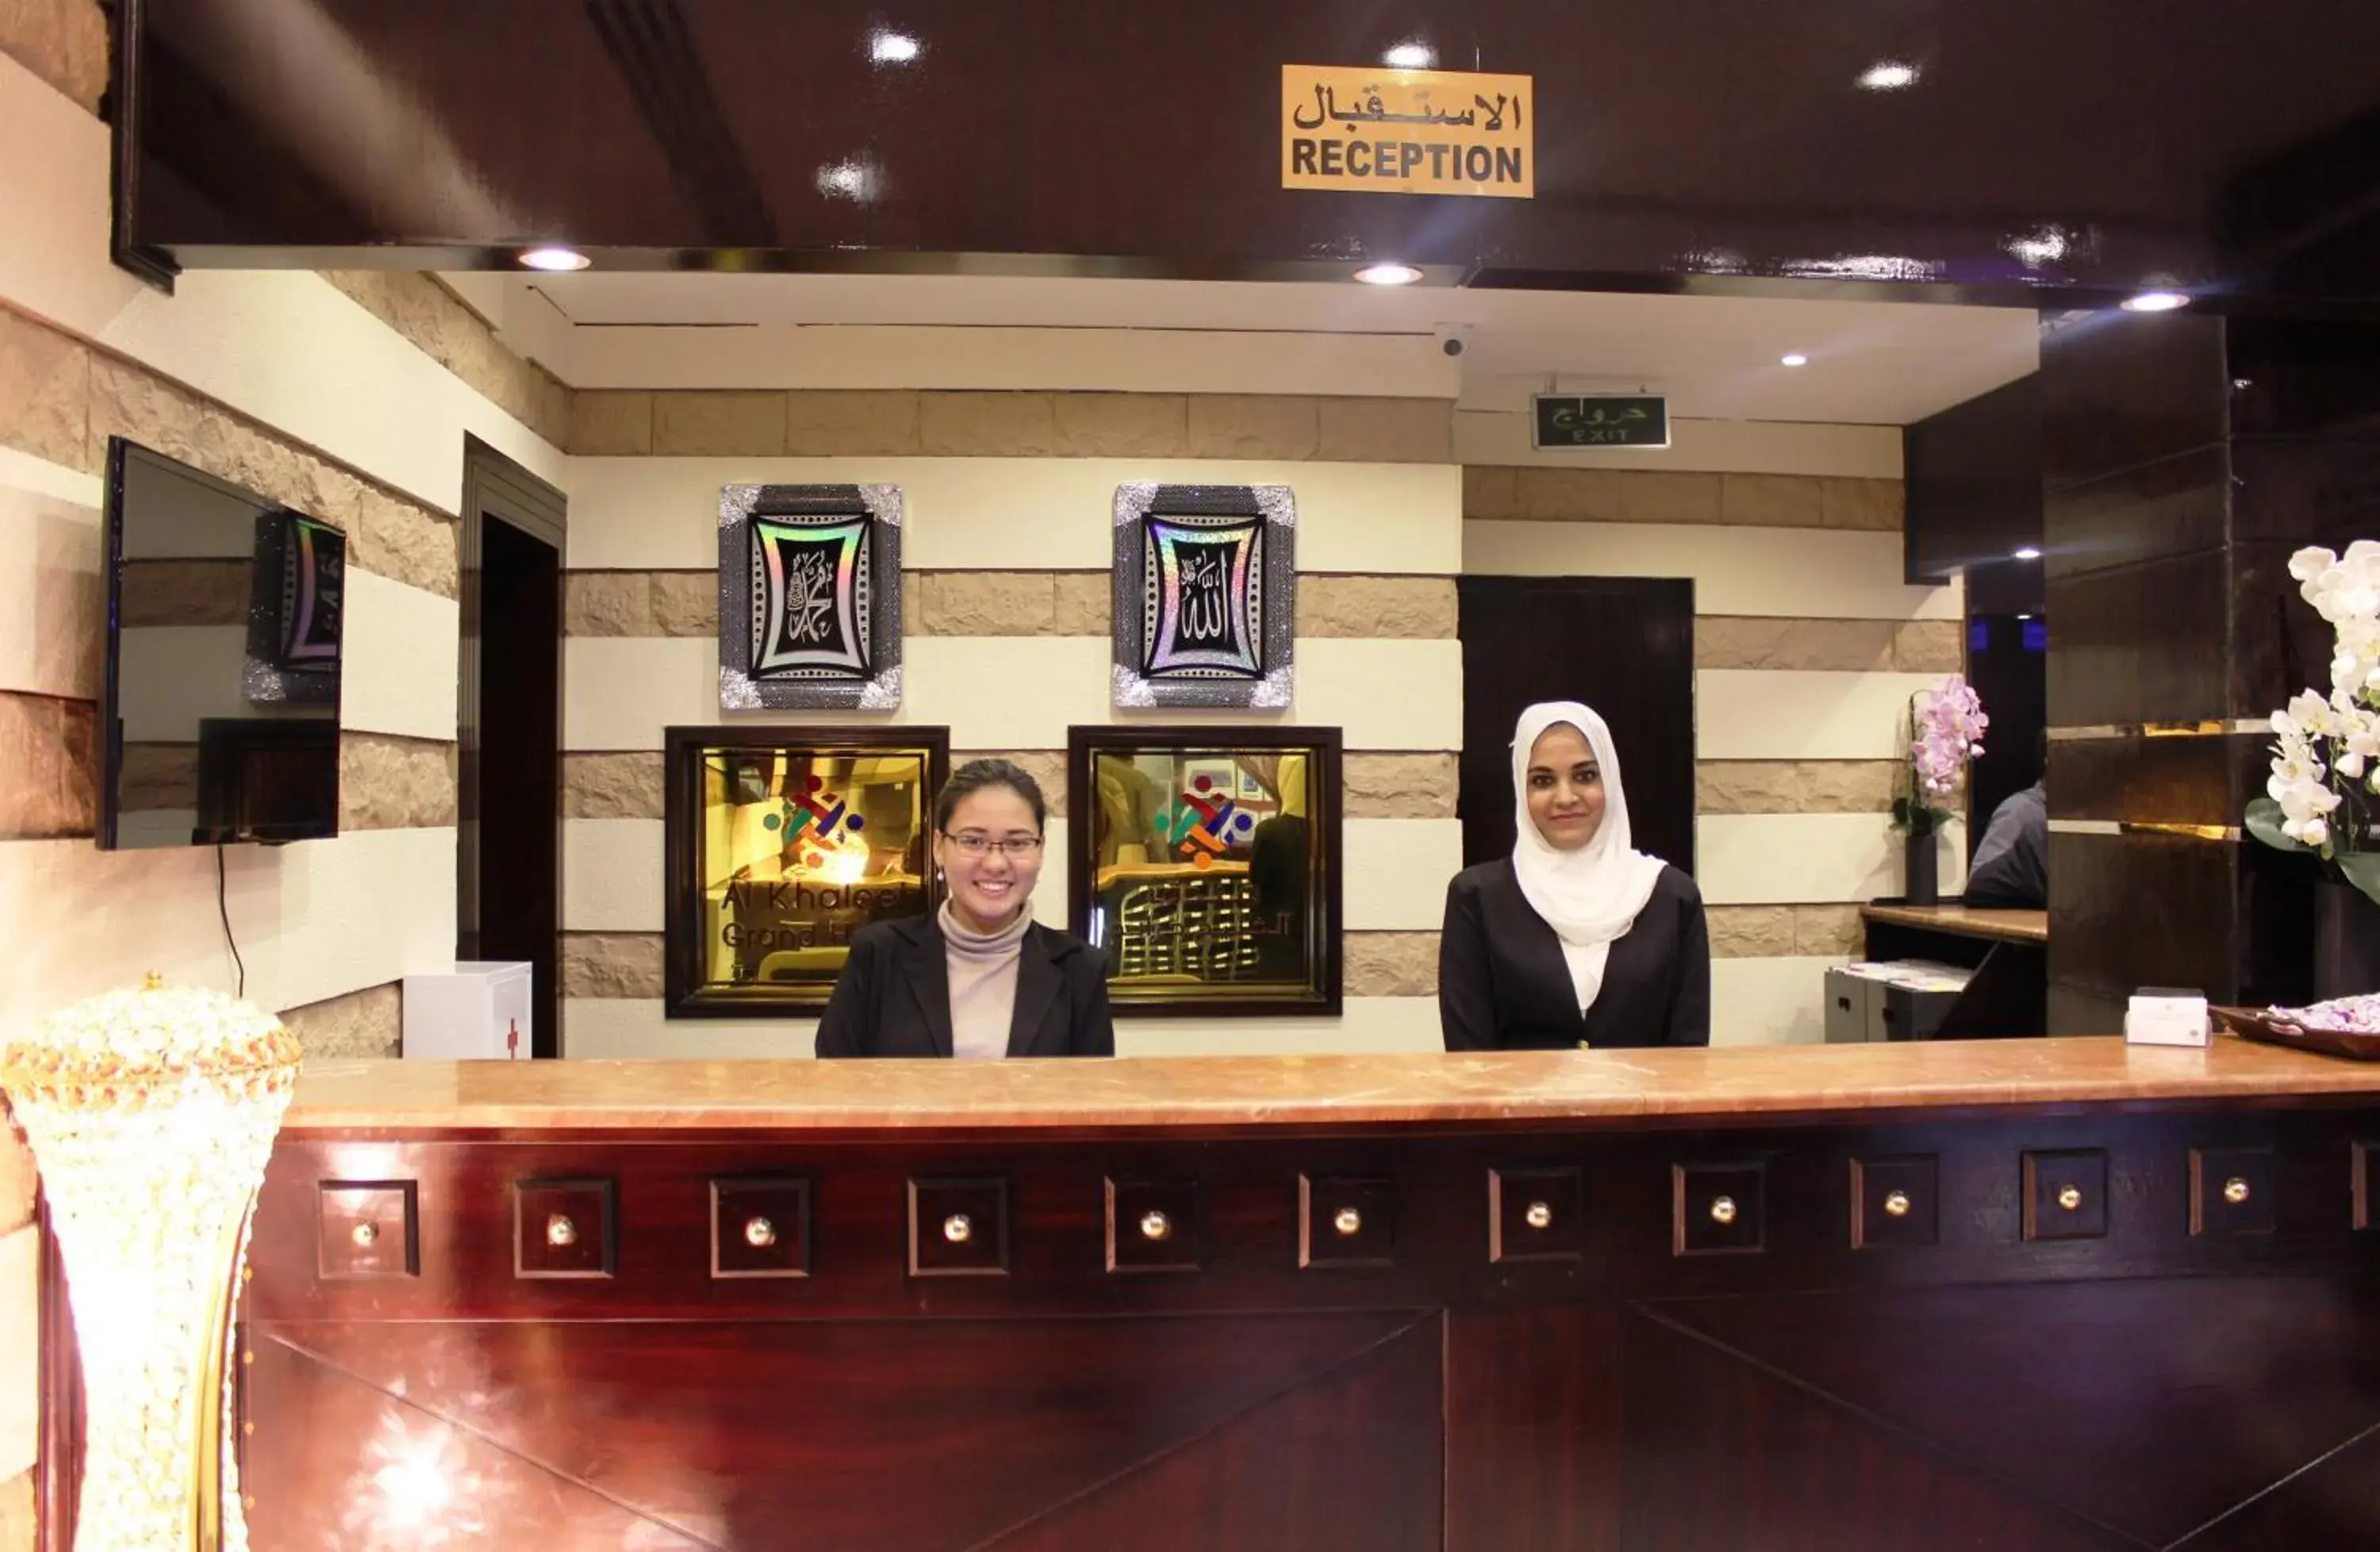 Lobby or reception, Lobby/Reception in Al Khaleej Grand Hotel